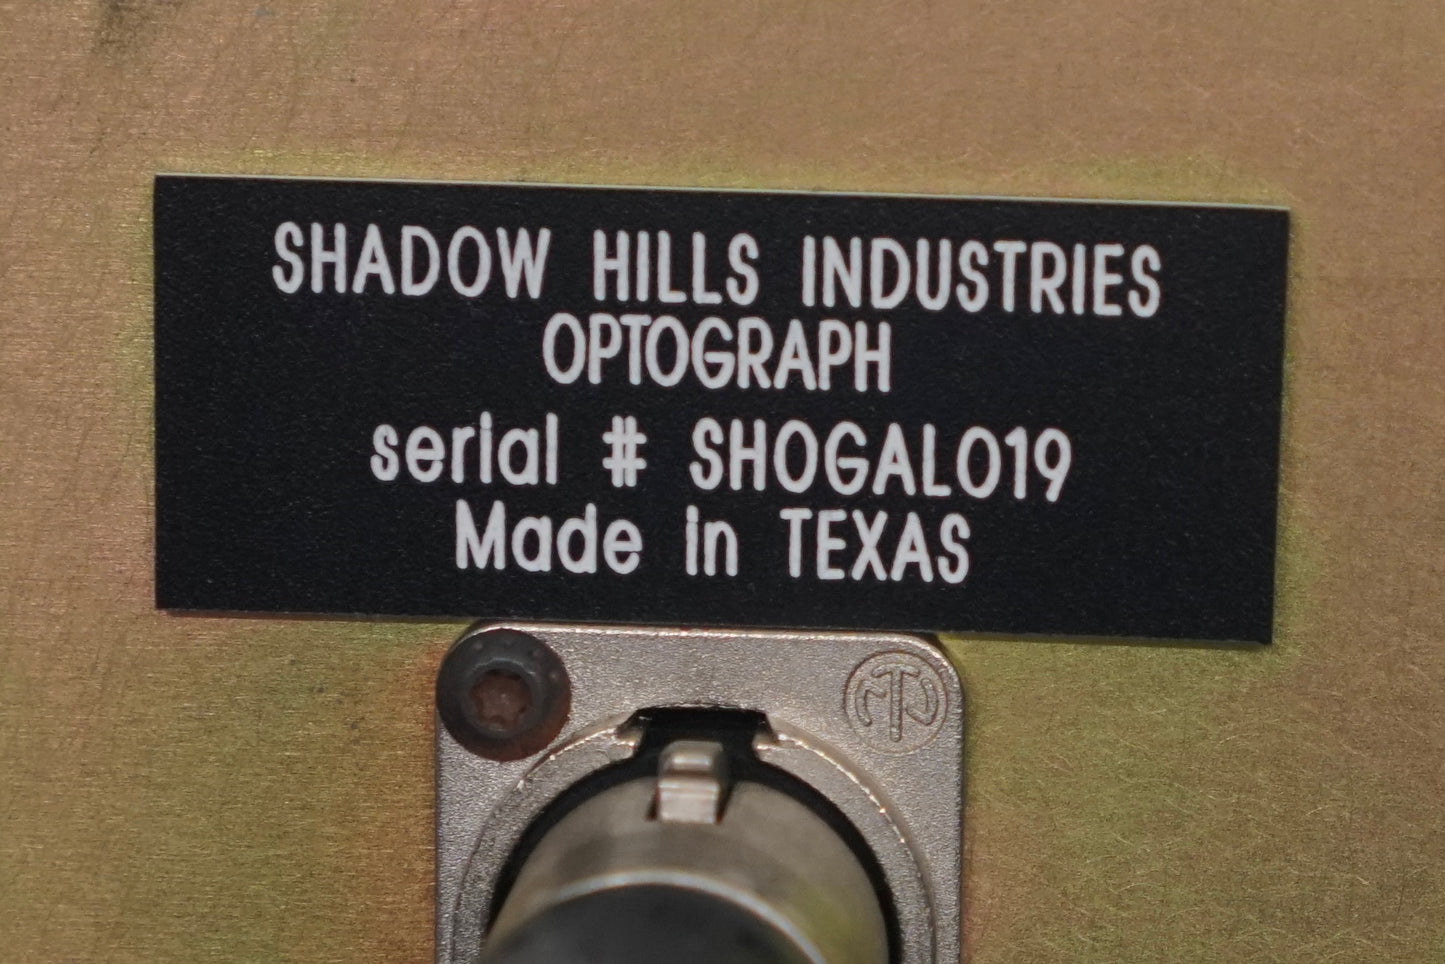 Optógrafo de Shadow Hills